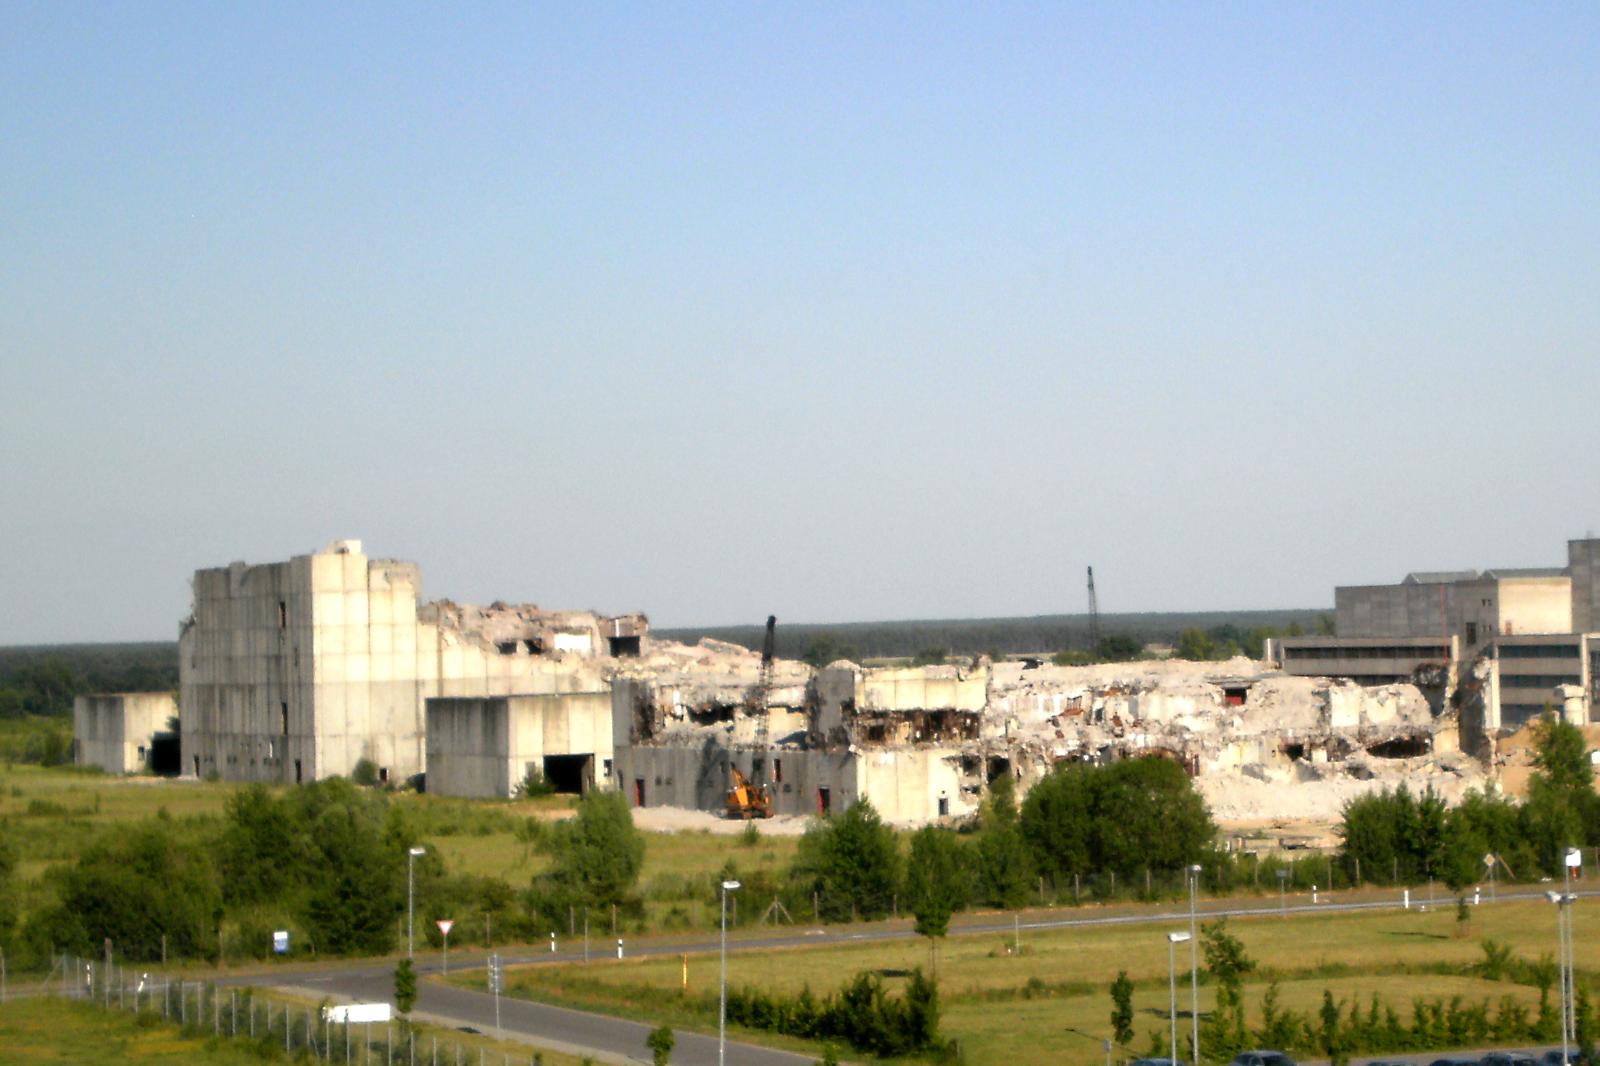  AKW/KKW Stendal, Reaktorgebäude 1 und 2 am 28.06.2010 